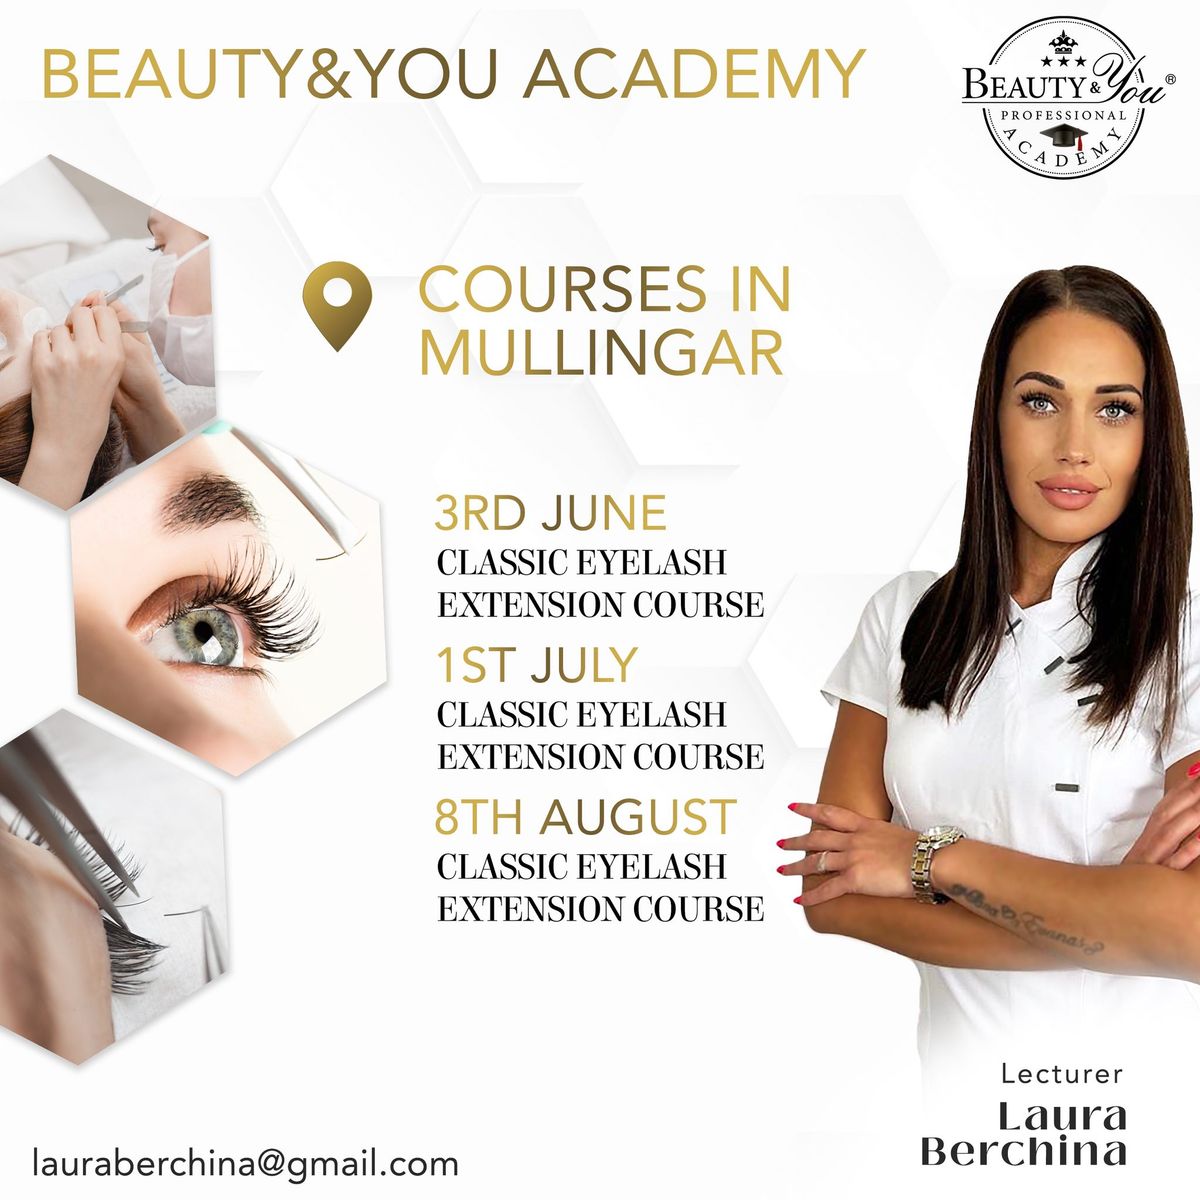 Classic Eyelash Extension Course | Mullingar, Ireland